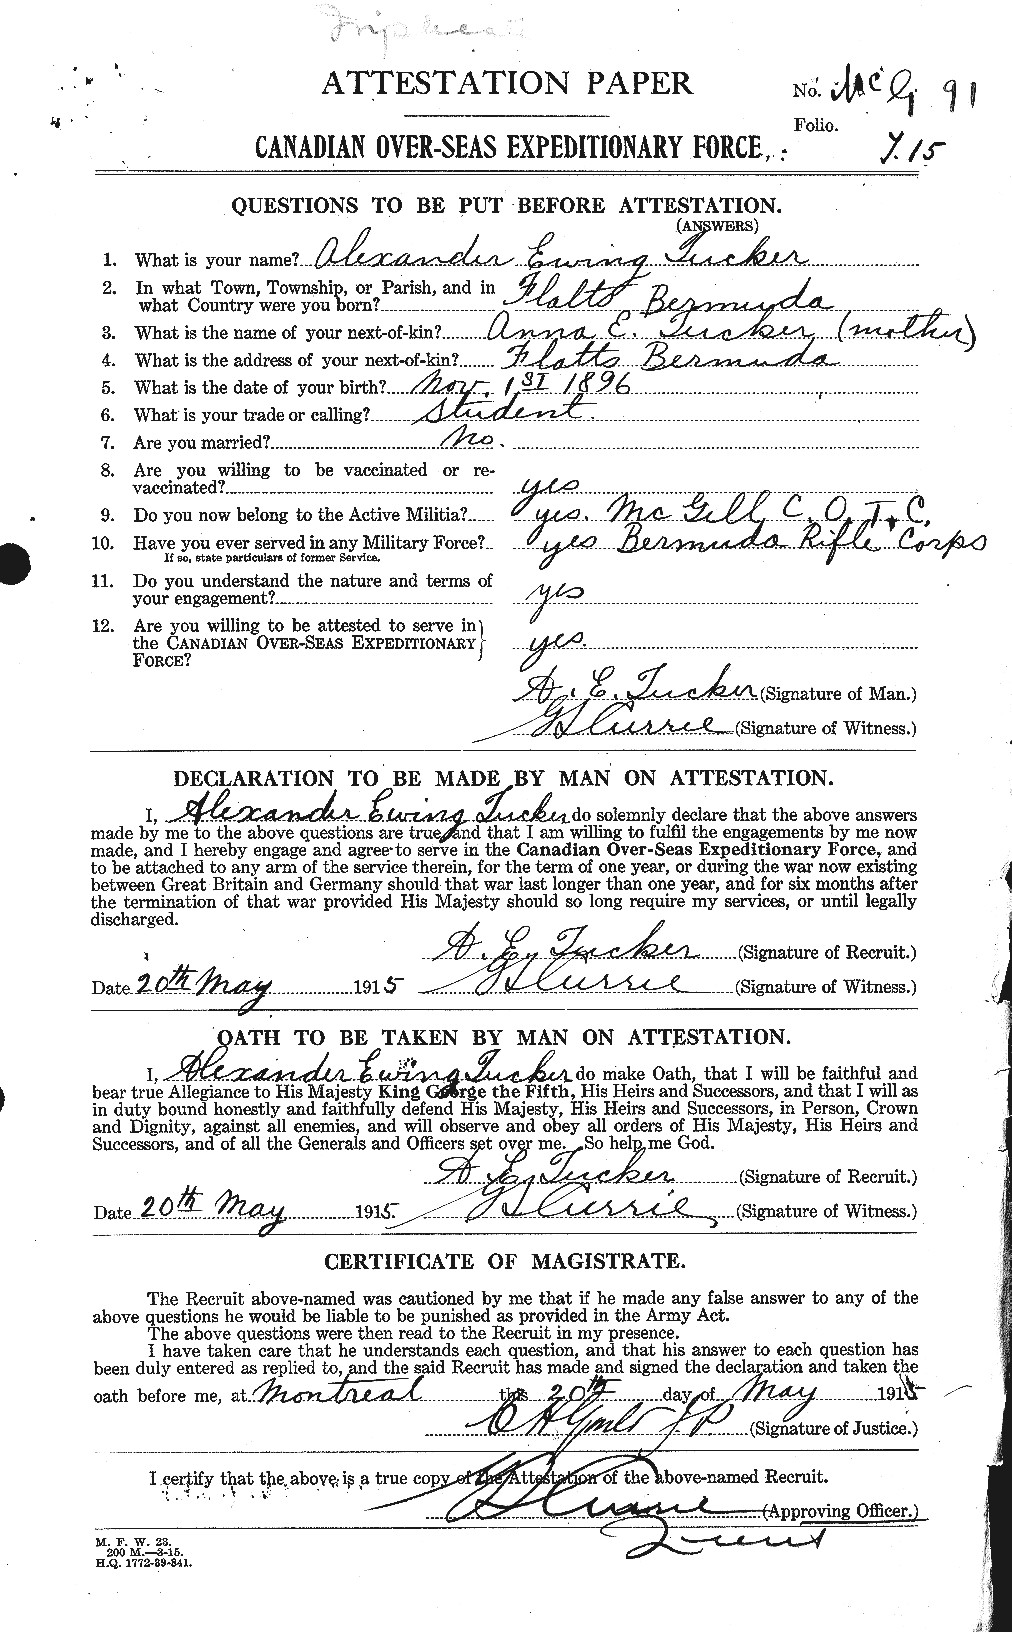 Dossiers du Personnel de la Première Guerre mondiale - CEC 642635a